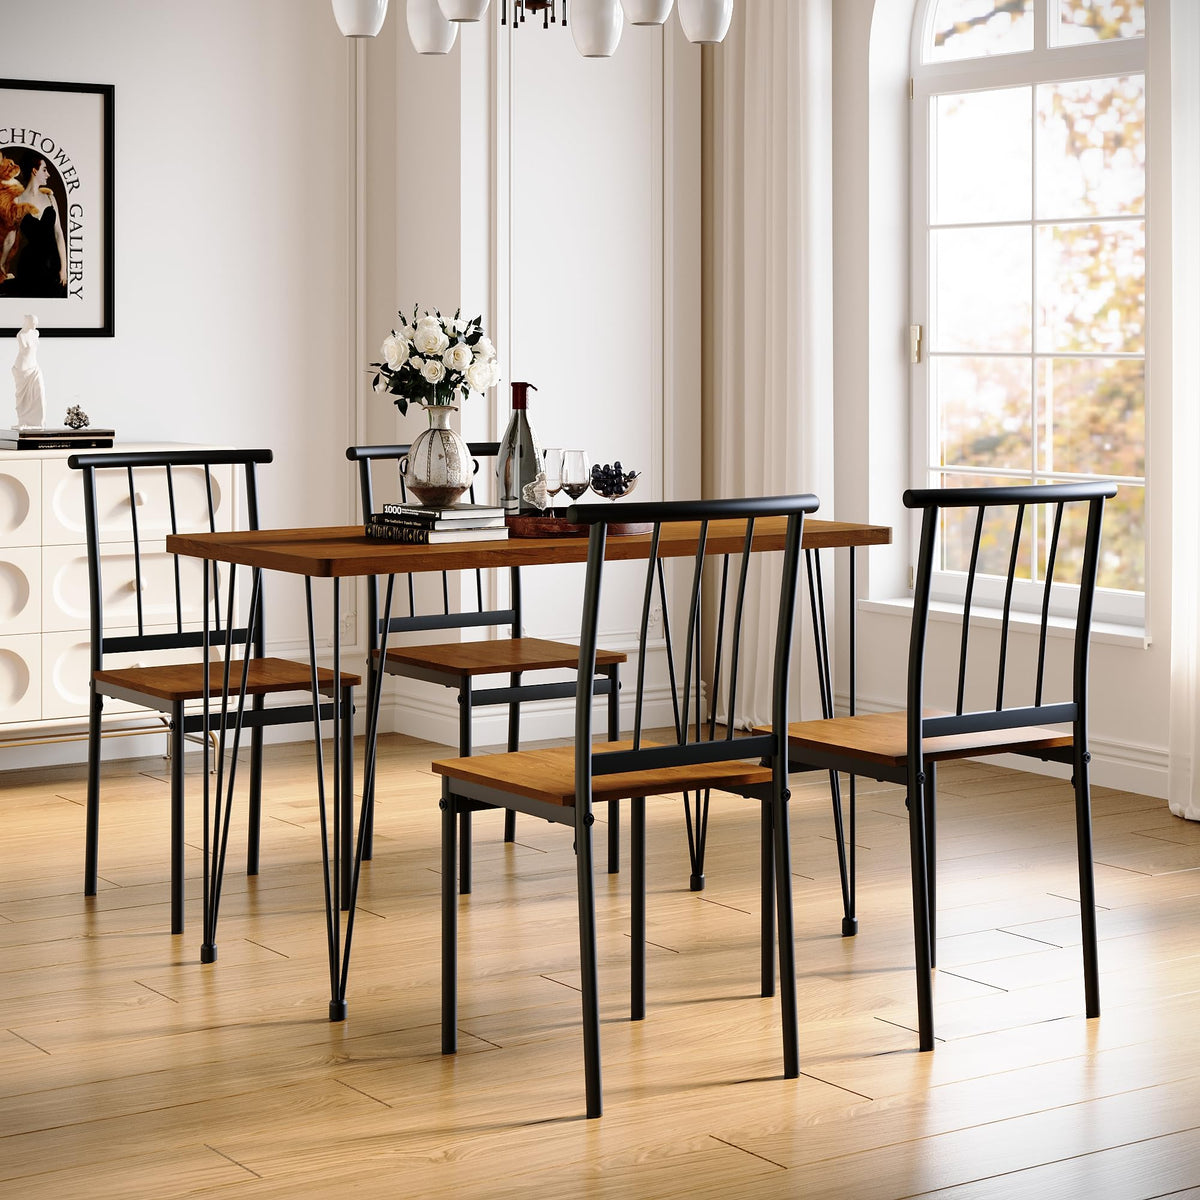 SONNI Esstisch mit 4 Stühlen Holz Solider Stahlrahmen Esszimmer Küche Stühle Tisch Möbel Essgruppe Sitzgruppe,Vintage Dunkelbraun,120x60x76cm